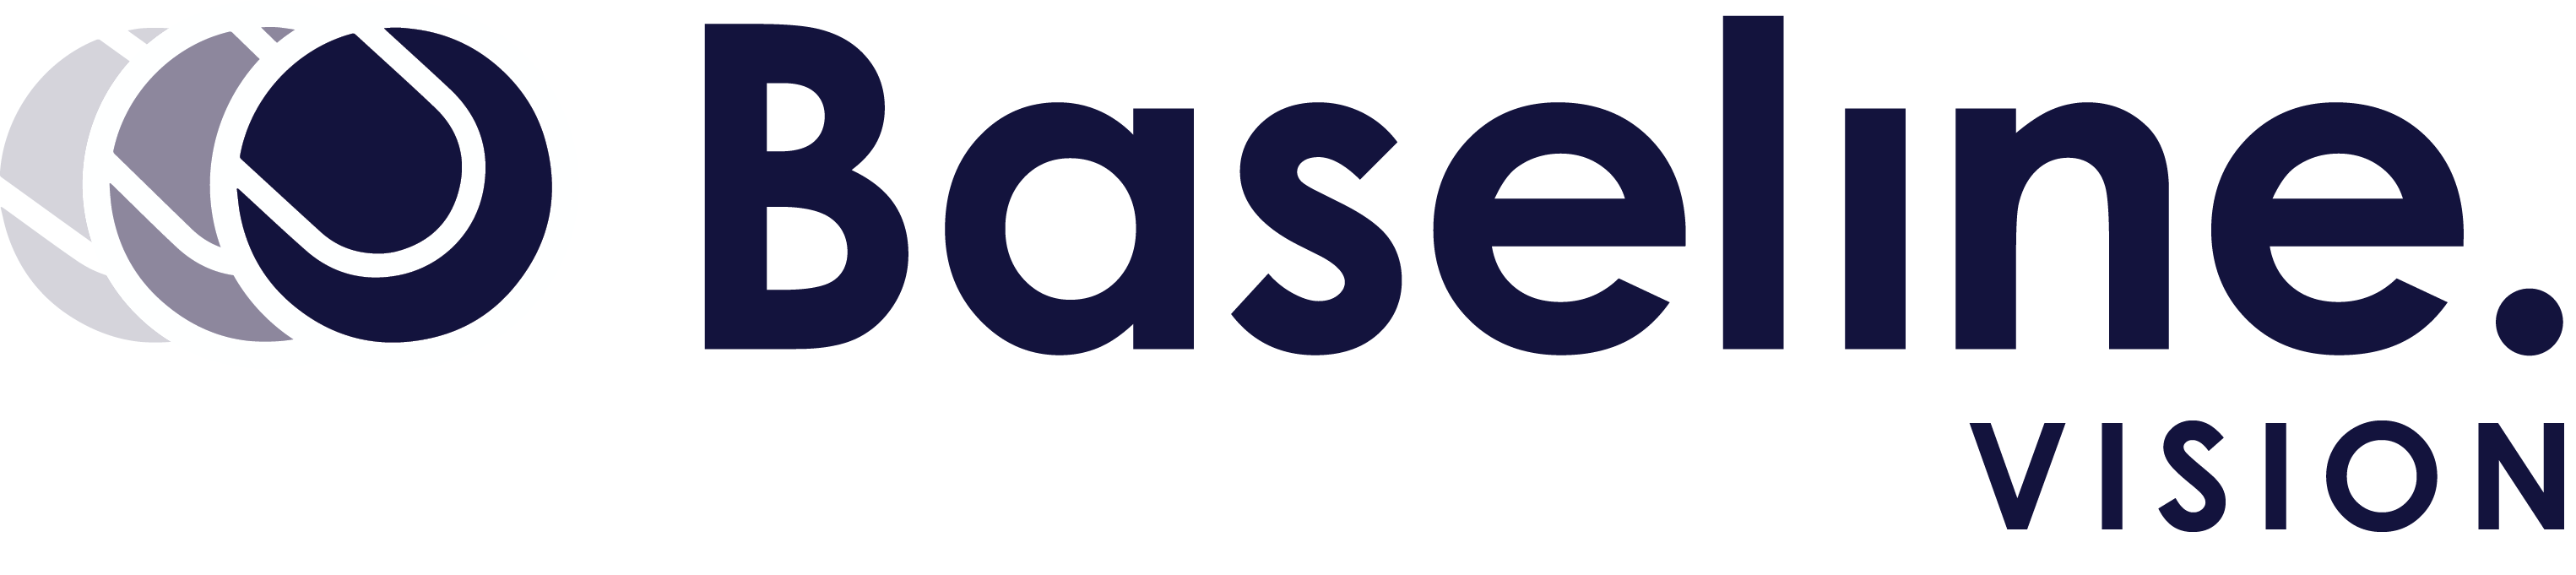 Baseline Vision Help Center logo